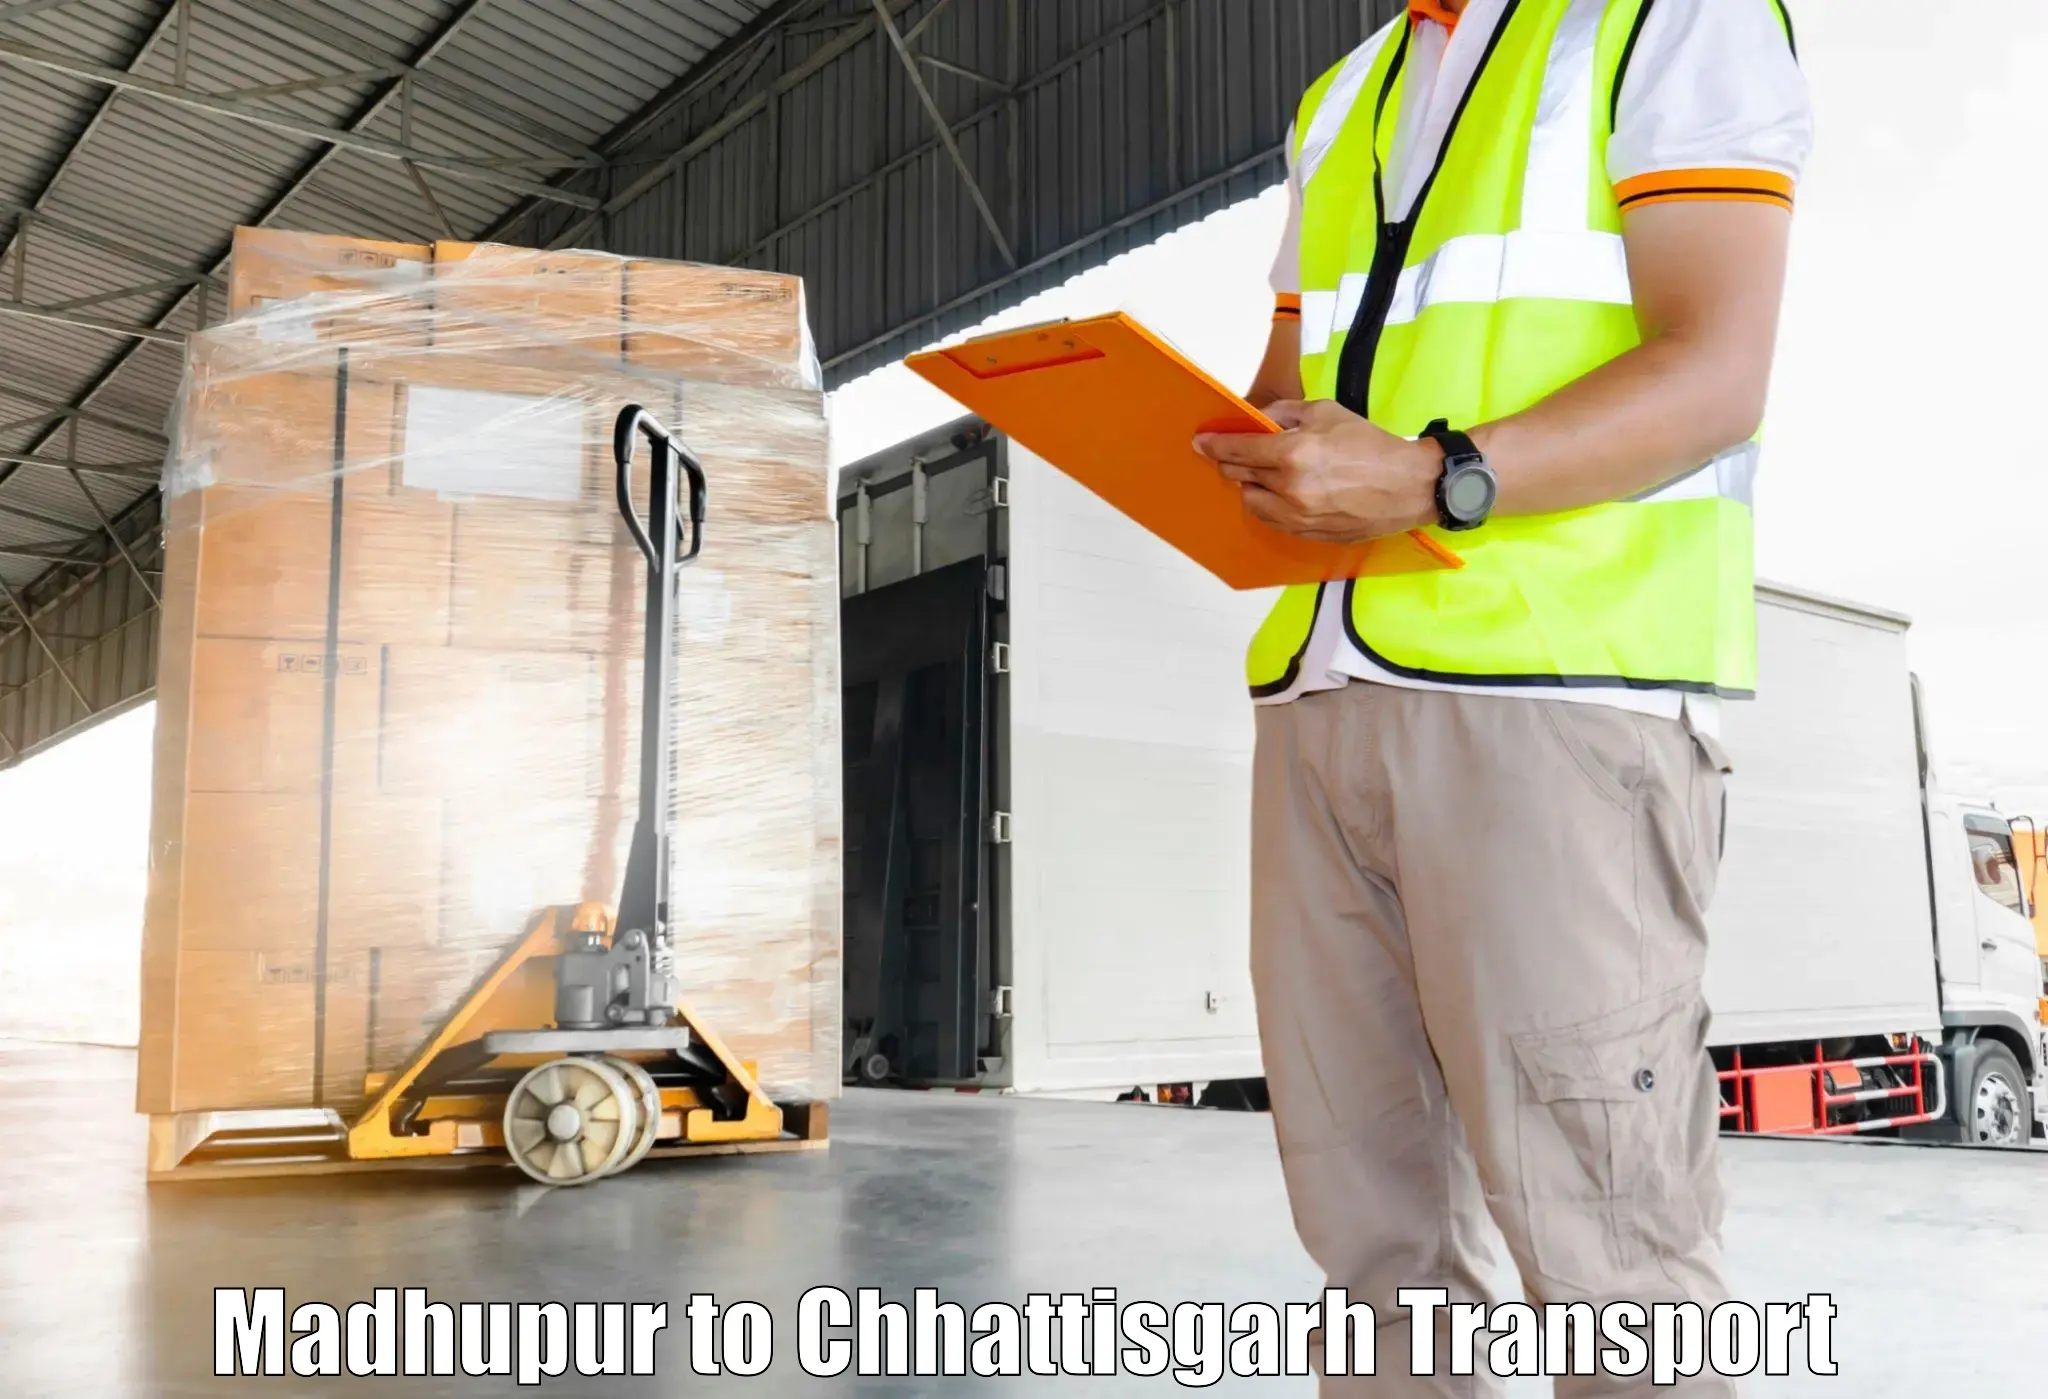 Air freight transport services Madhupur to Raigarh Chhattisgarh